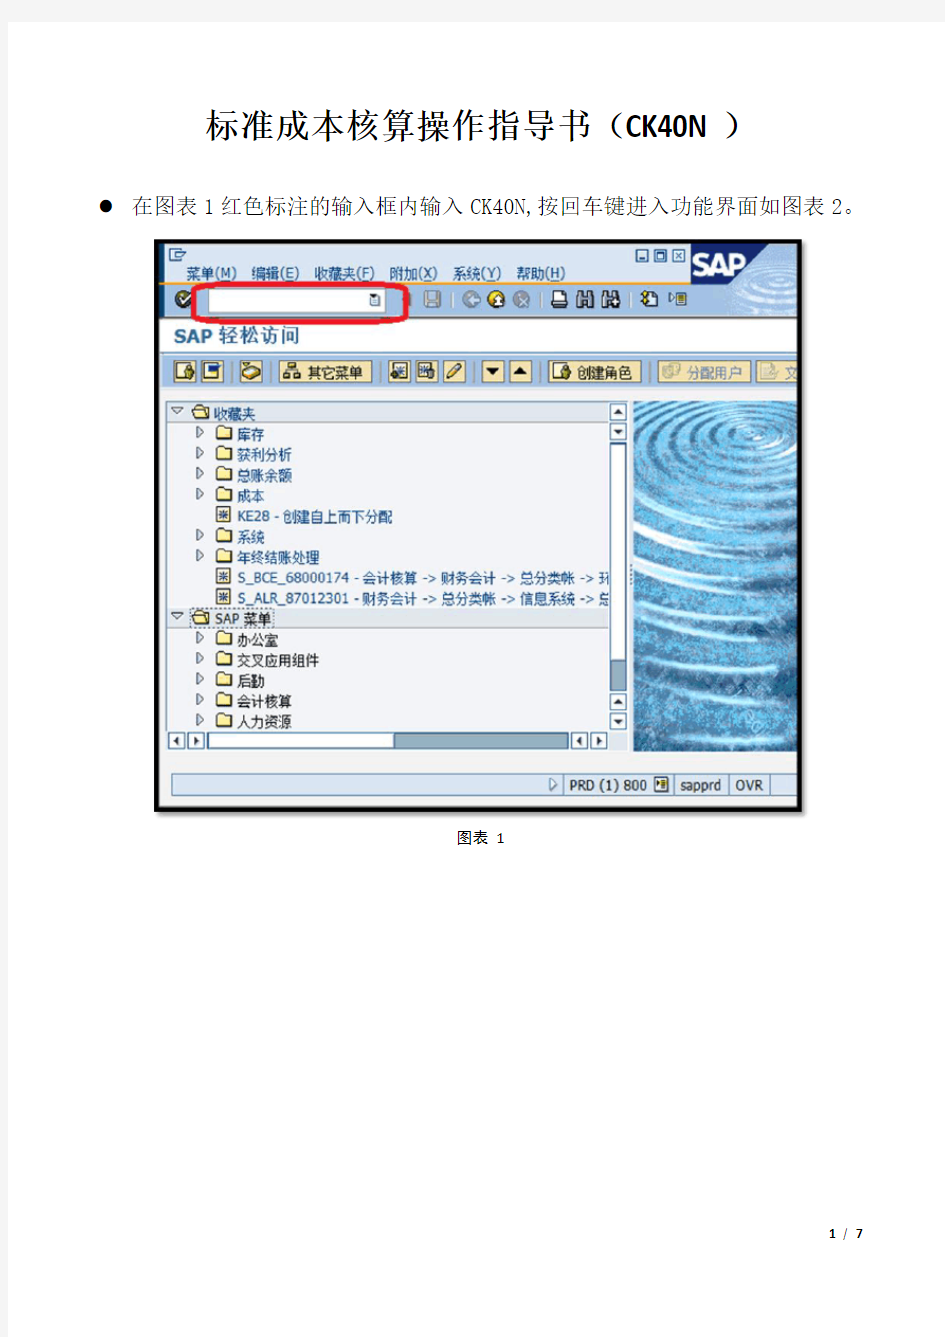 SAP-CK40N操作指导书